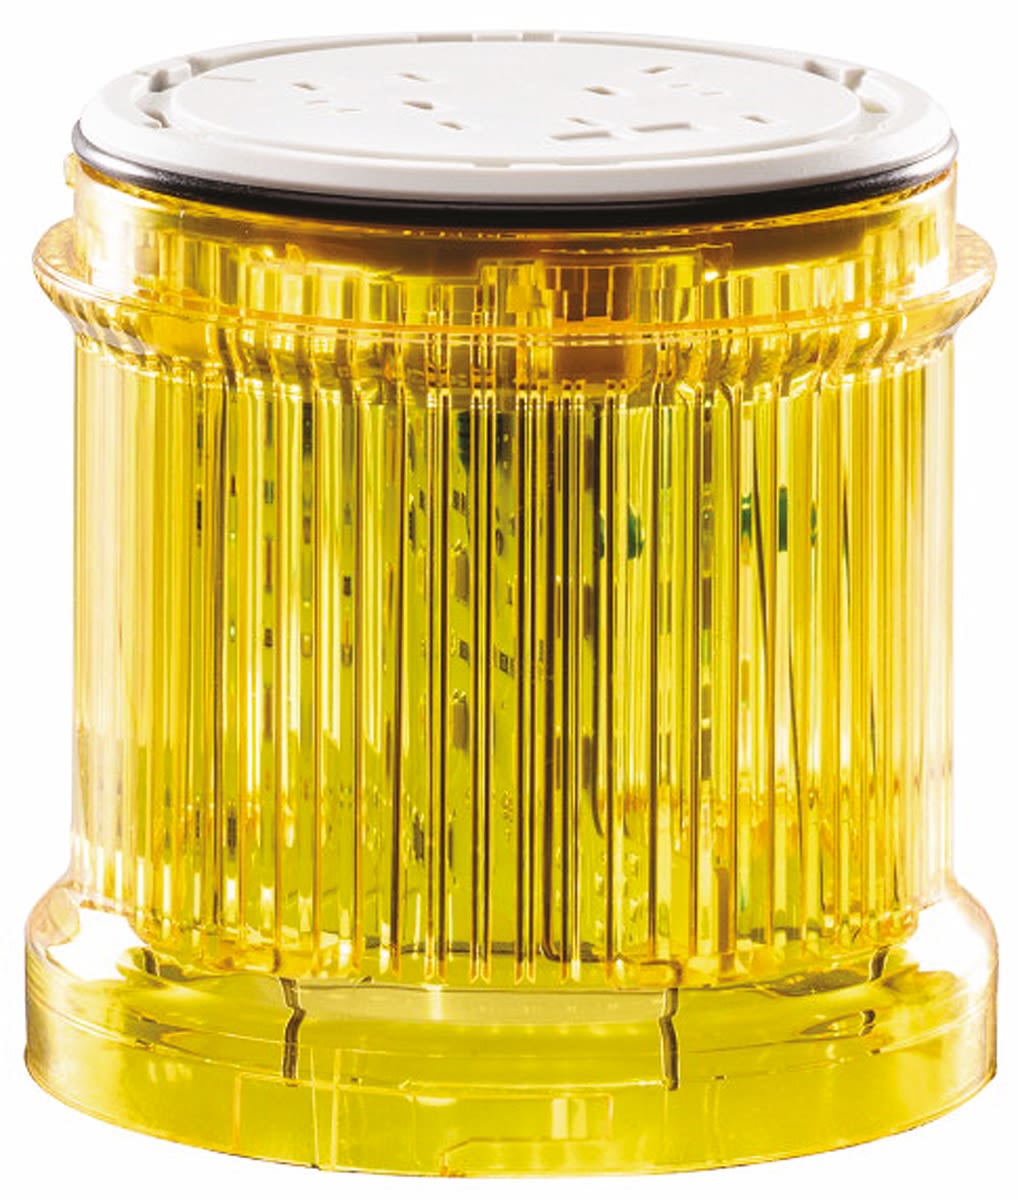 Eaton SL7 Signalleuchte Stroboskop-Licht Gelb, 230 V ac, 73mm x 61mm